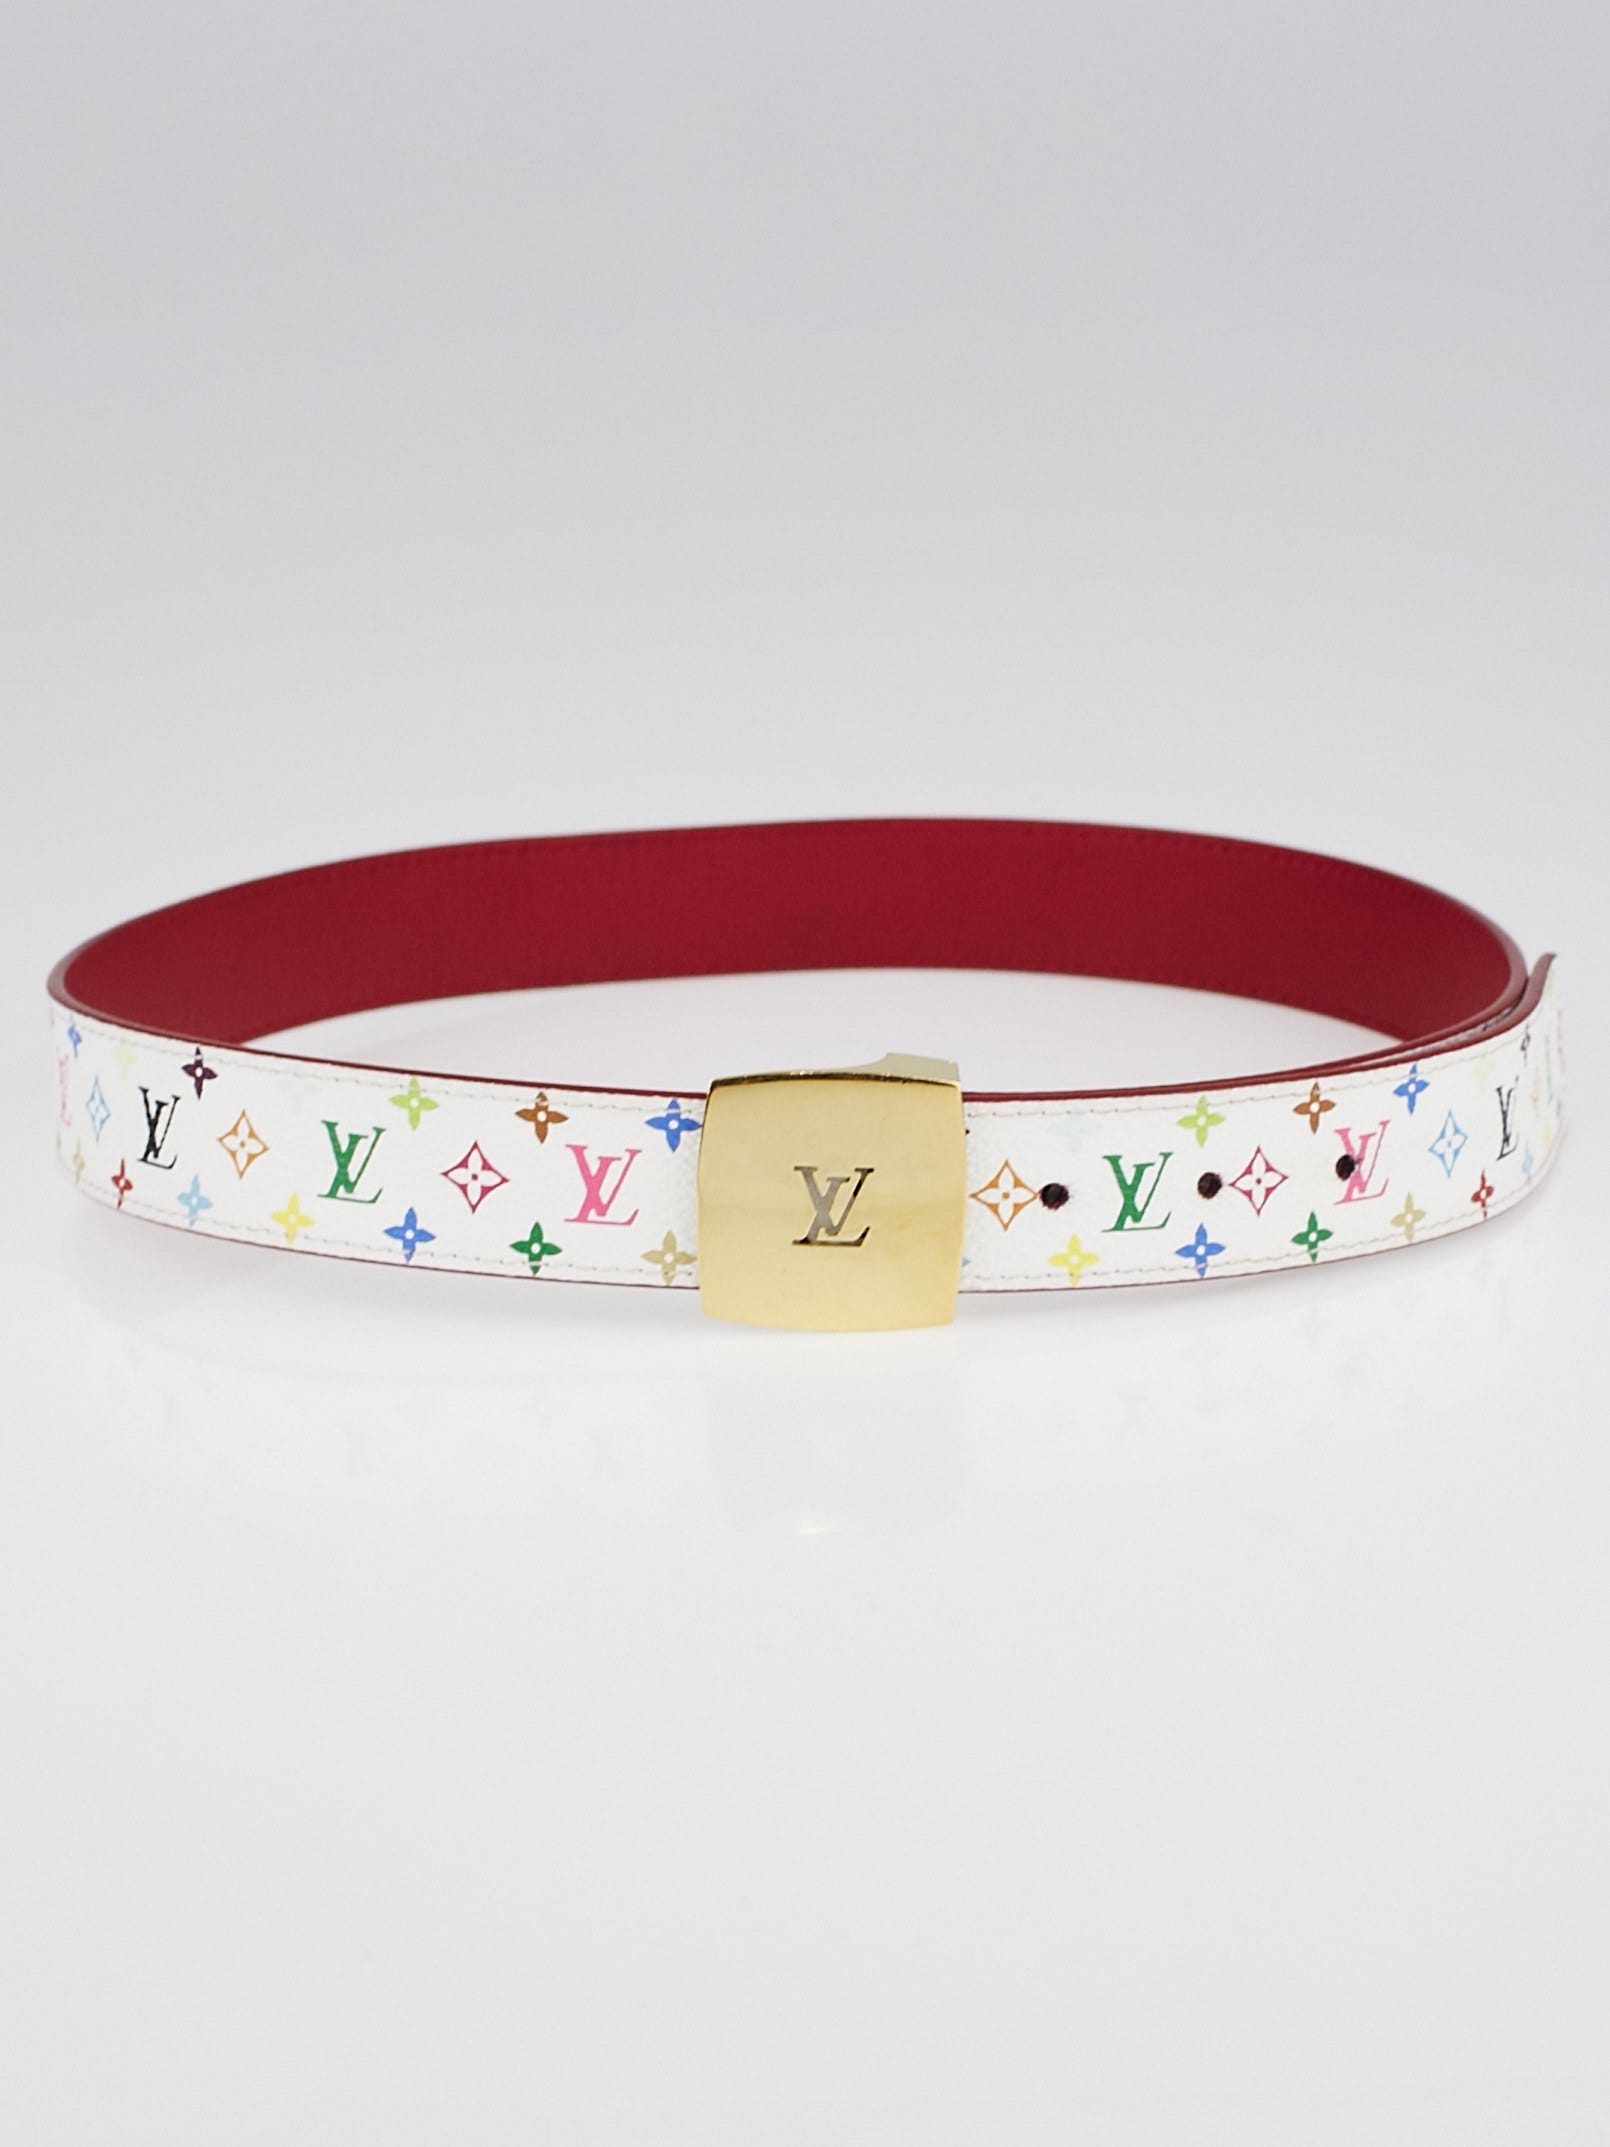 Authentic Louis Vuitton Reversible Monogram LV Buckle Belt Size 80 32 Women